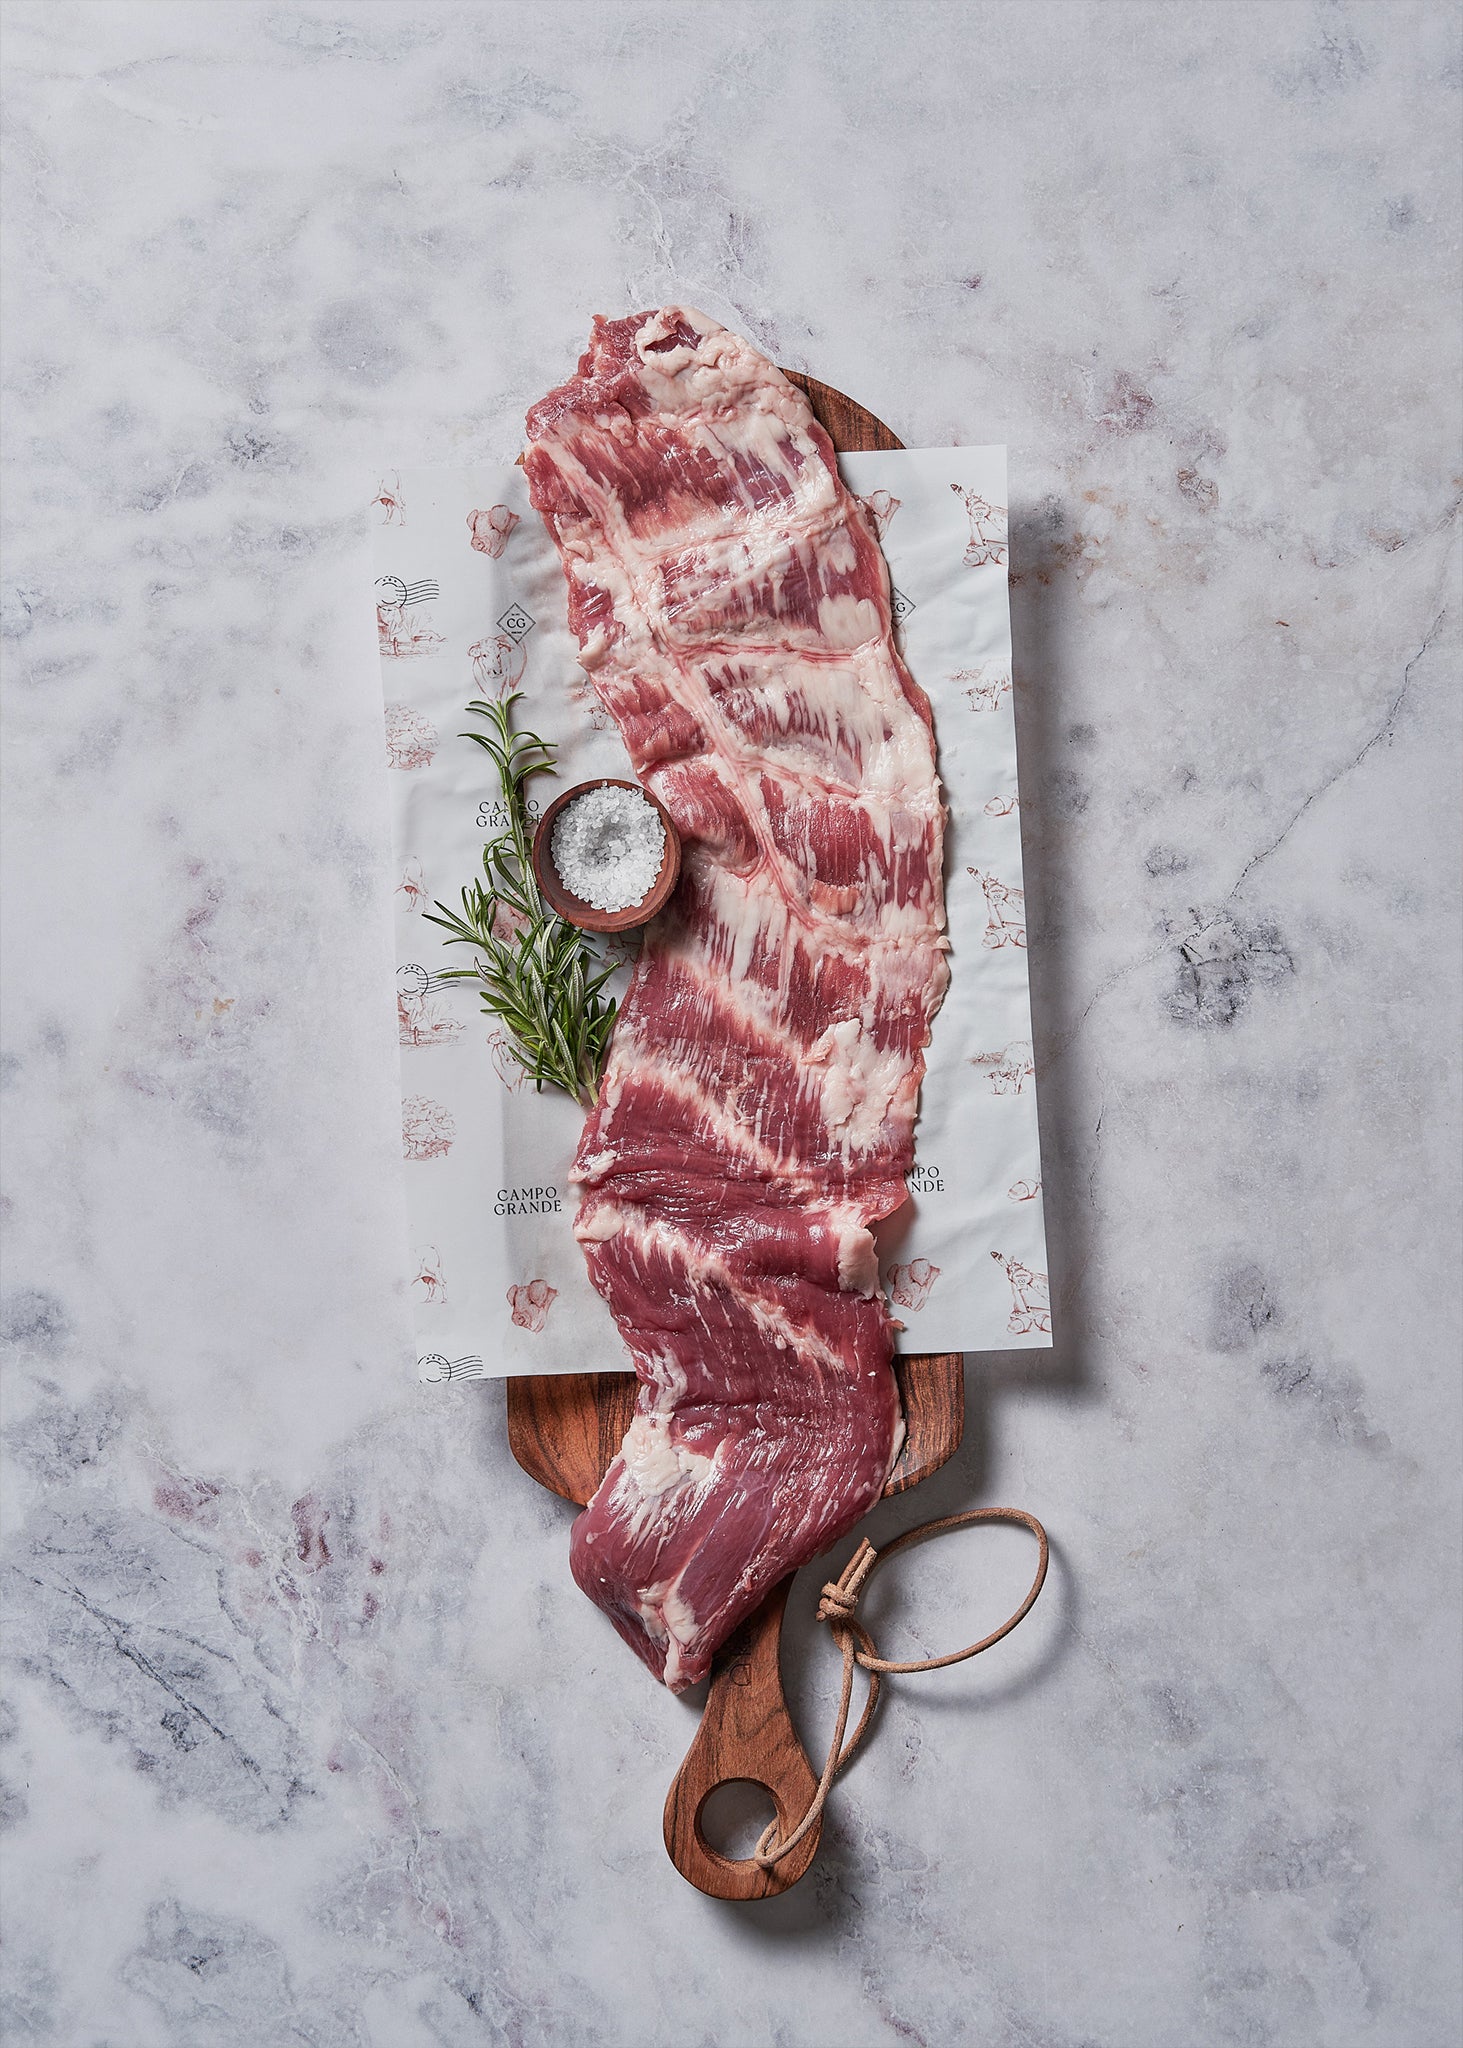 Ibérico Flank Steak – Campo Grande